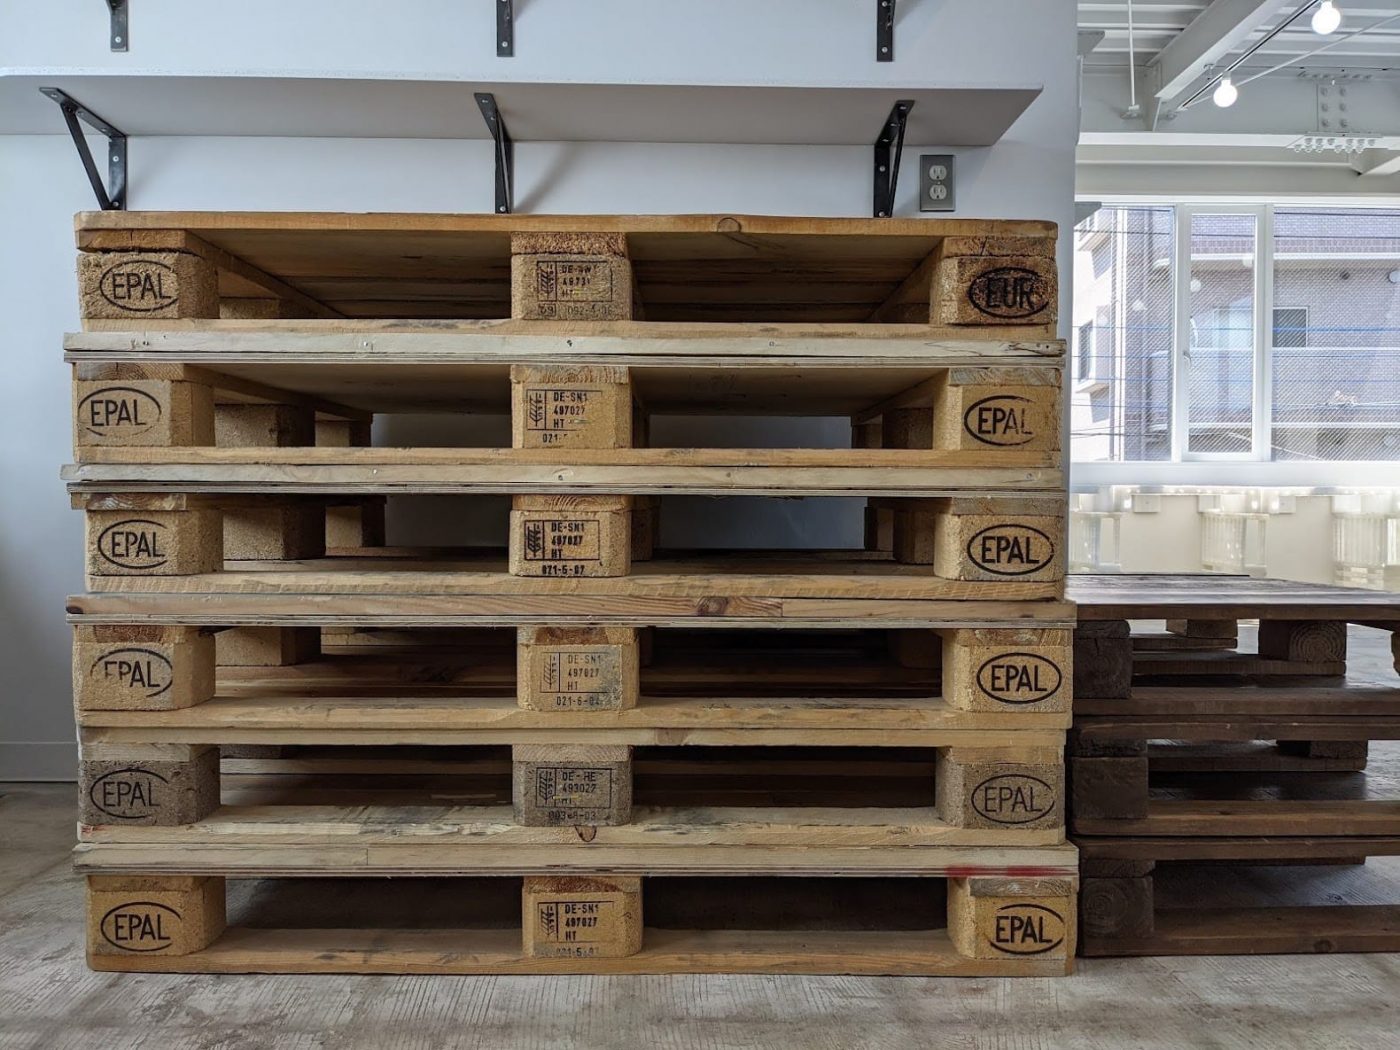 『パレット古材』の元の姿、積み重ねられた「木製パレット」が棚代わりに。